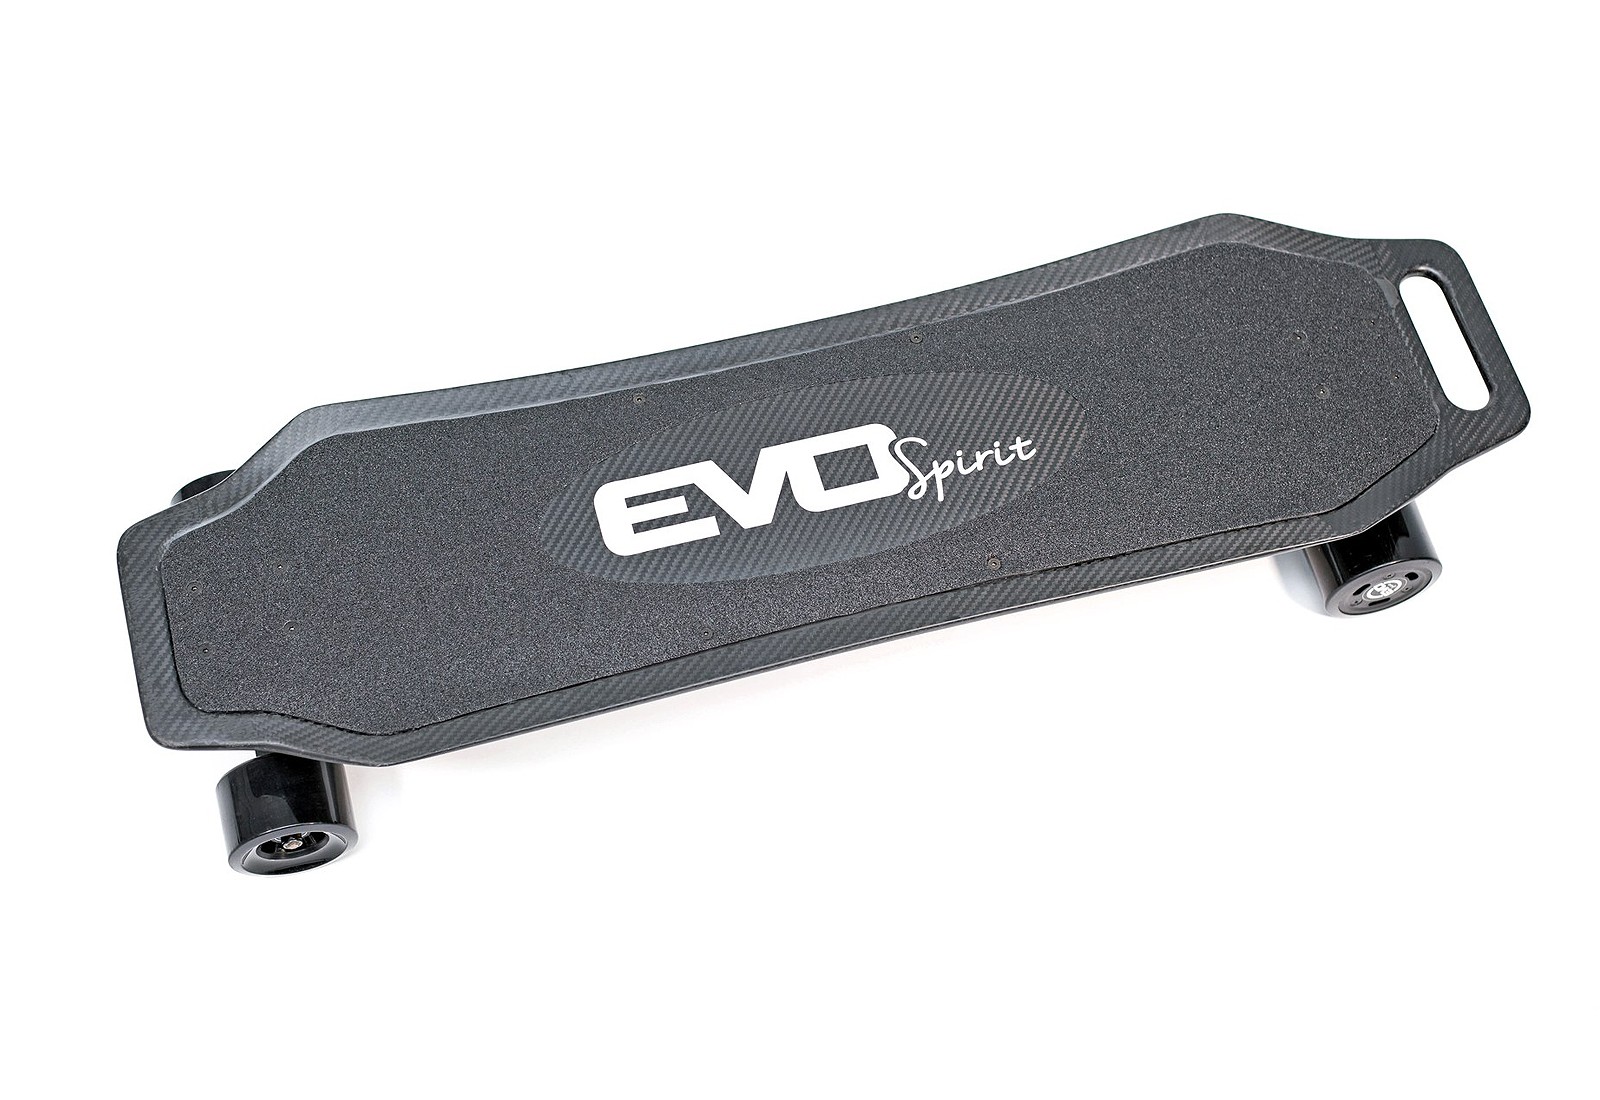 Skate électrique - Longboard - Tout terrain - Evo-spirit